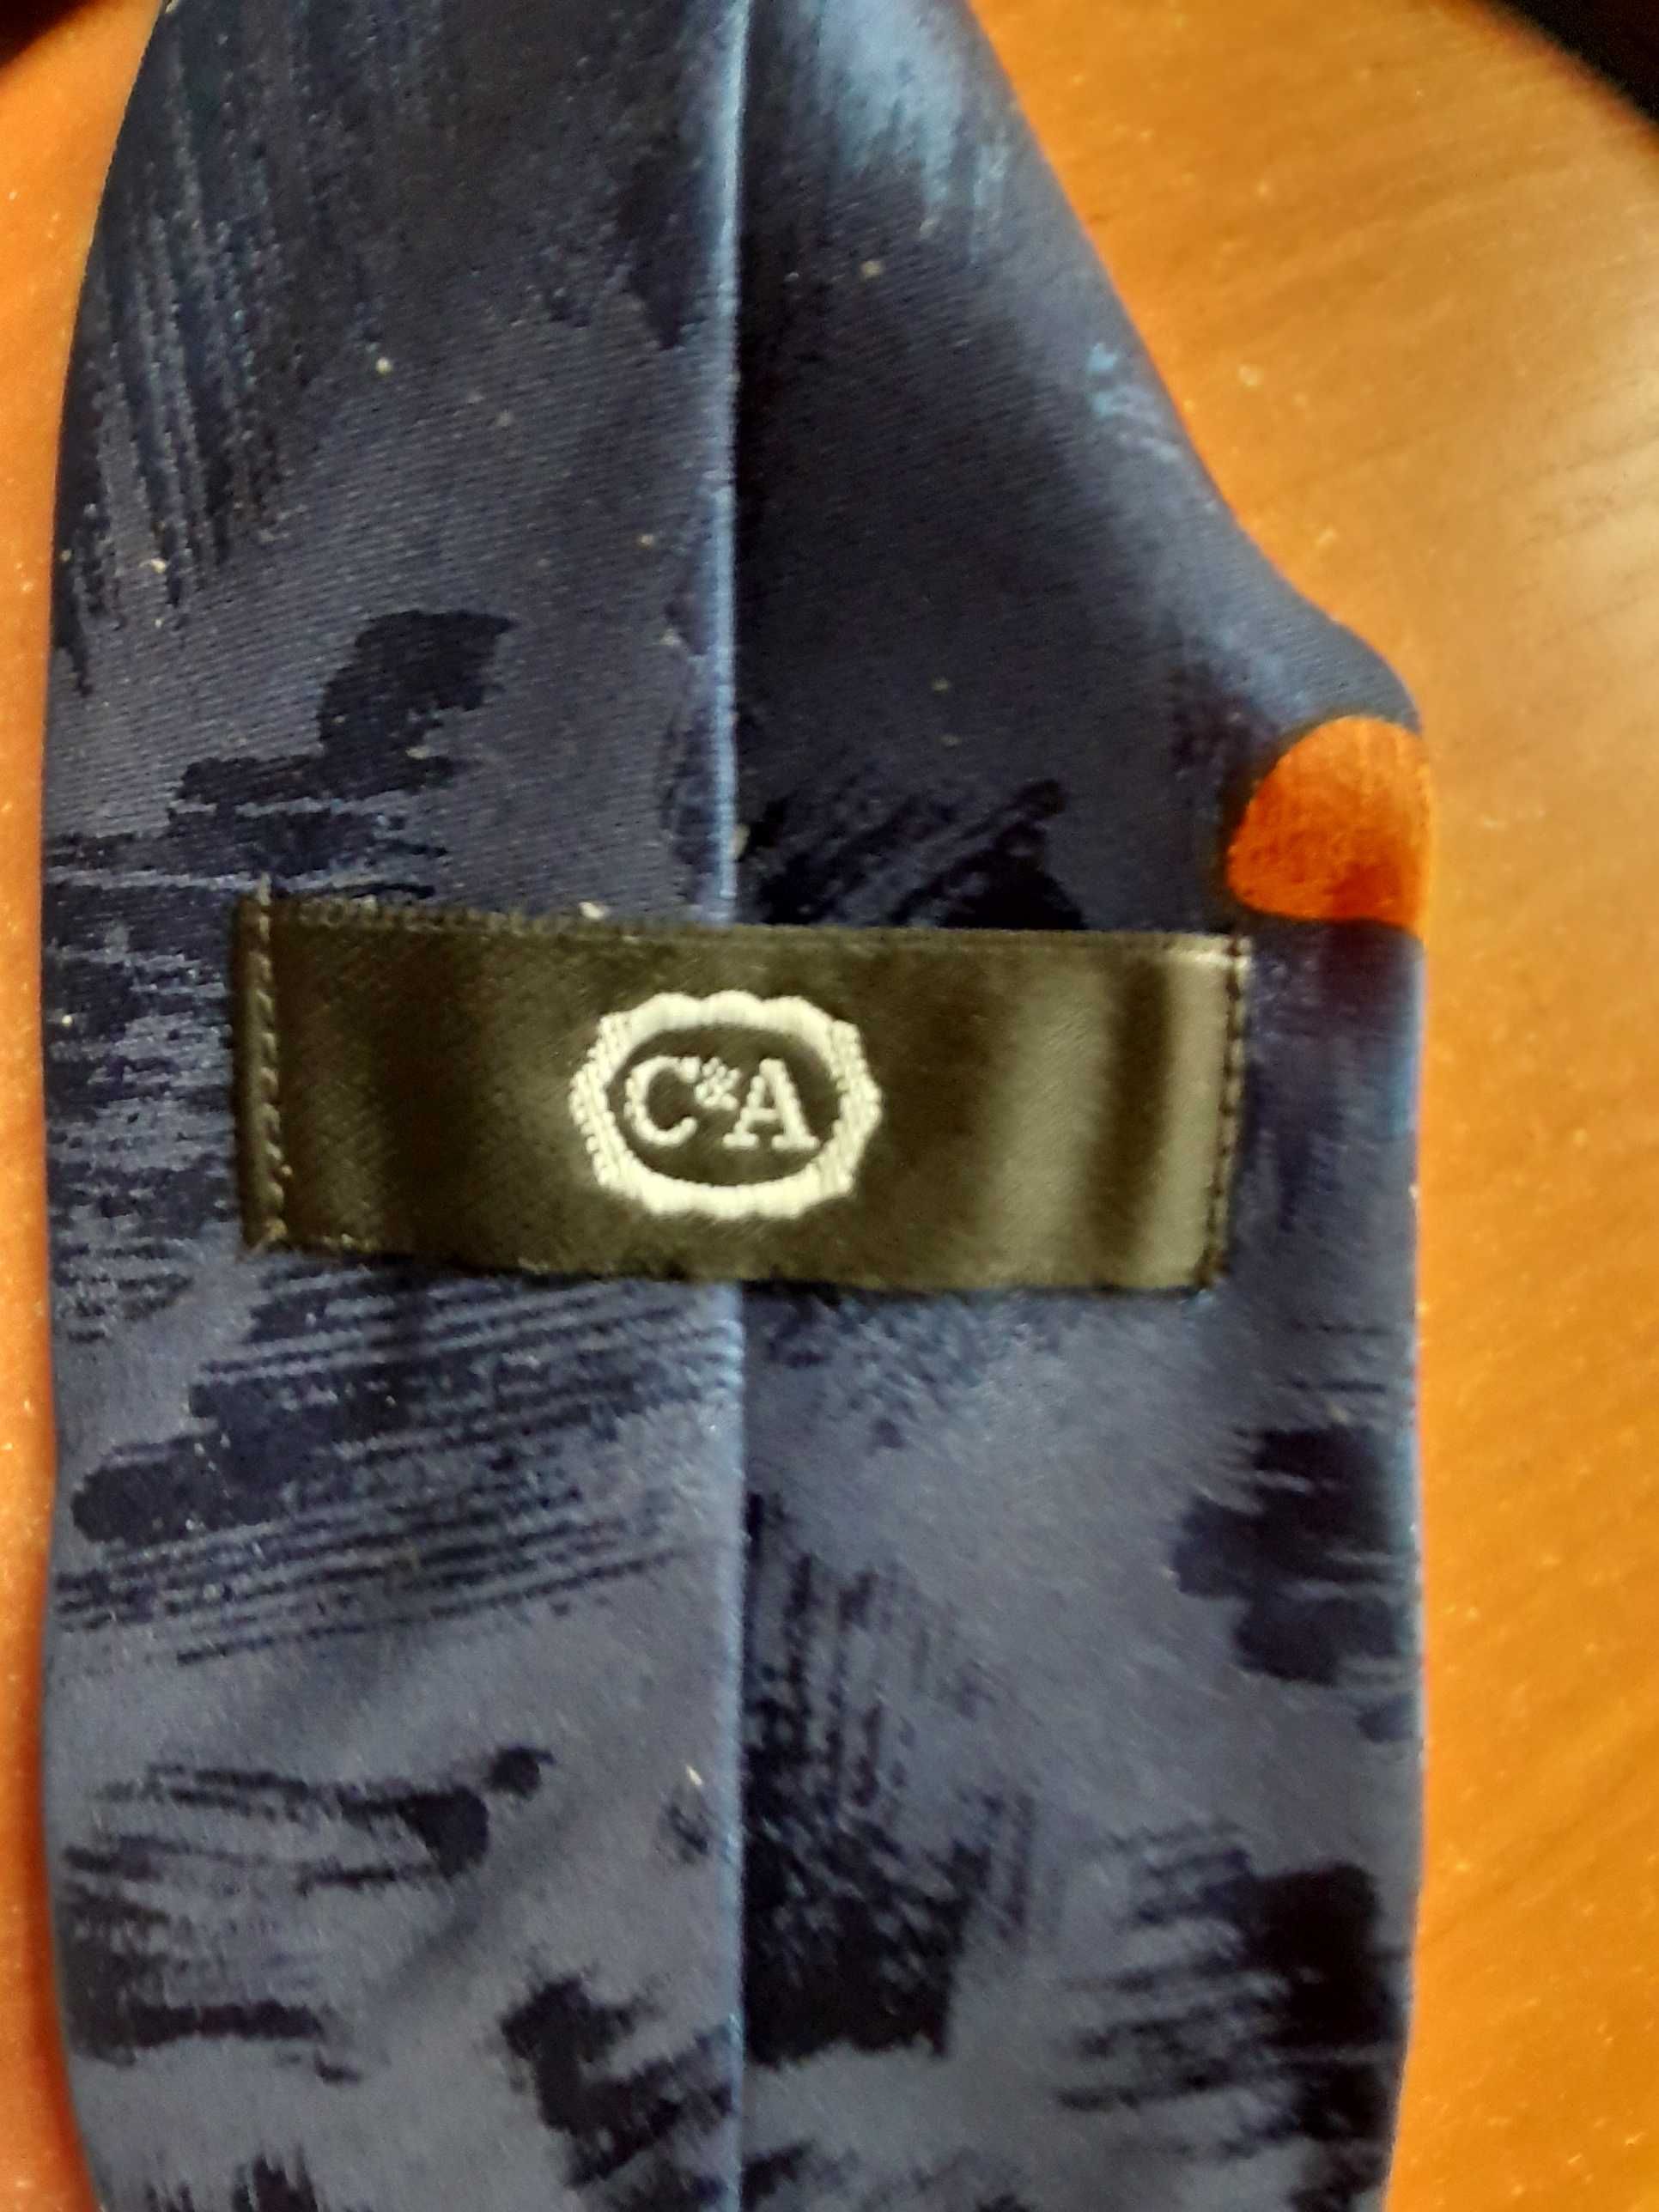 Прикольный мультяшный галстук в коллекцию.
C&A